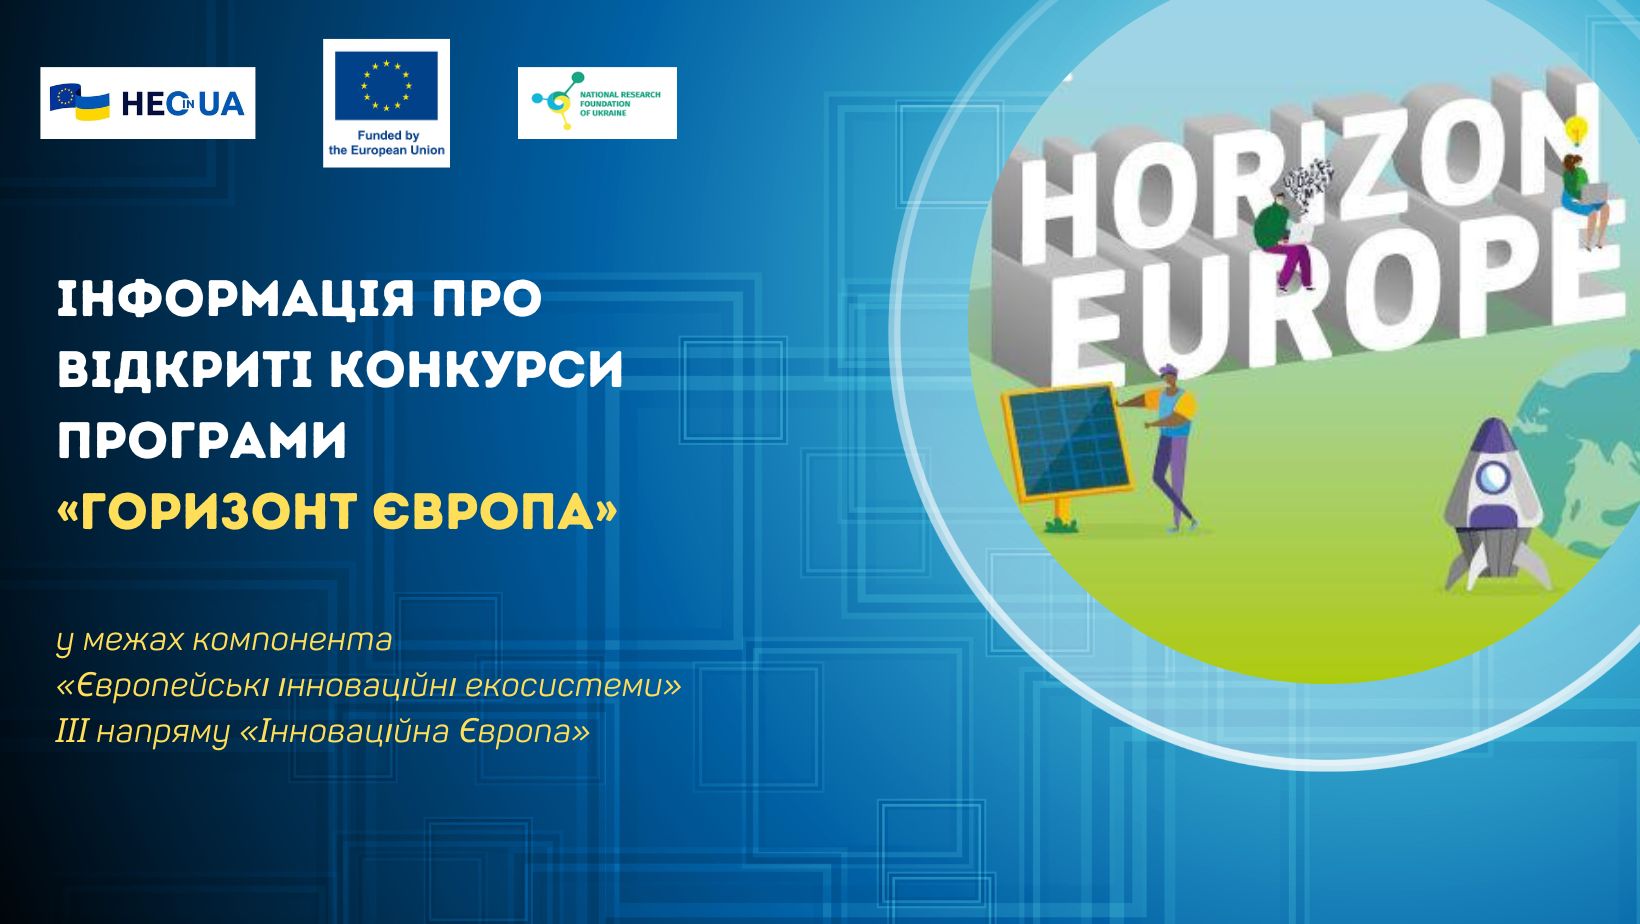 Інформація про відкриті конкурси за програмним компонентом «Європейські інноваційні екосистеми»